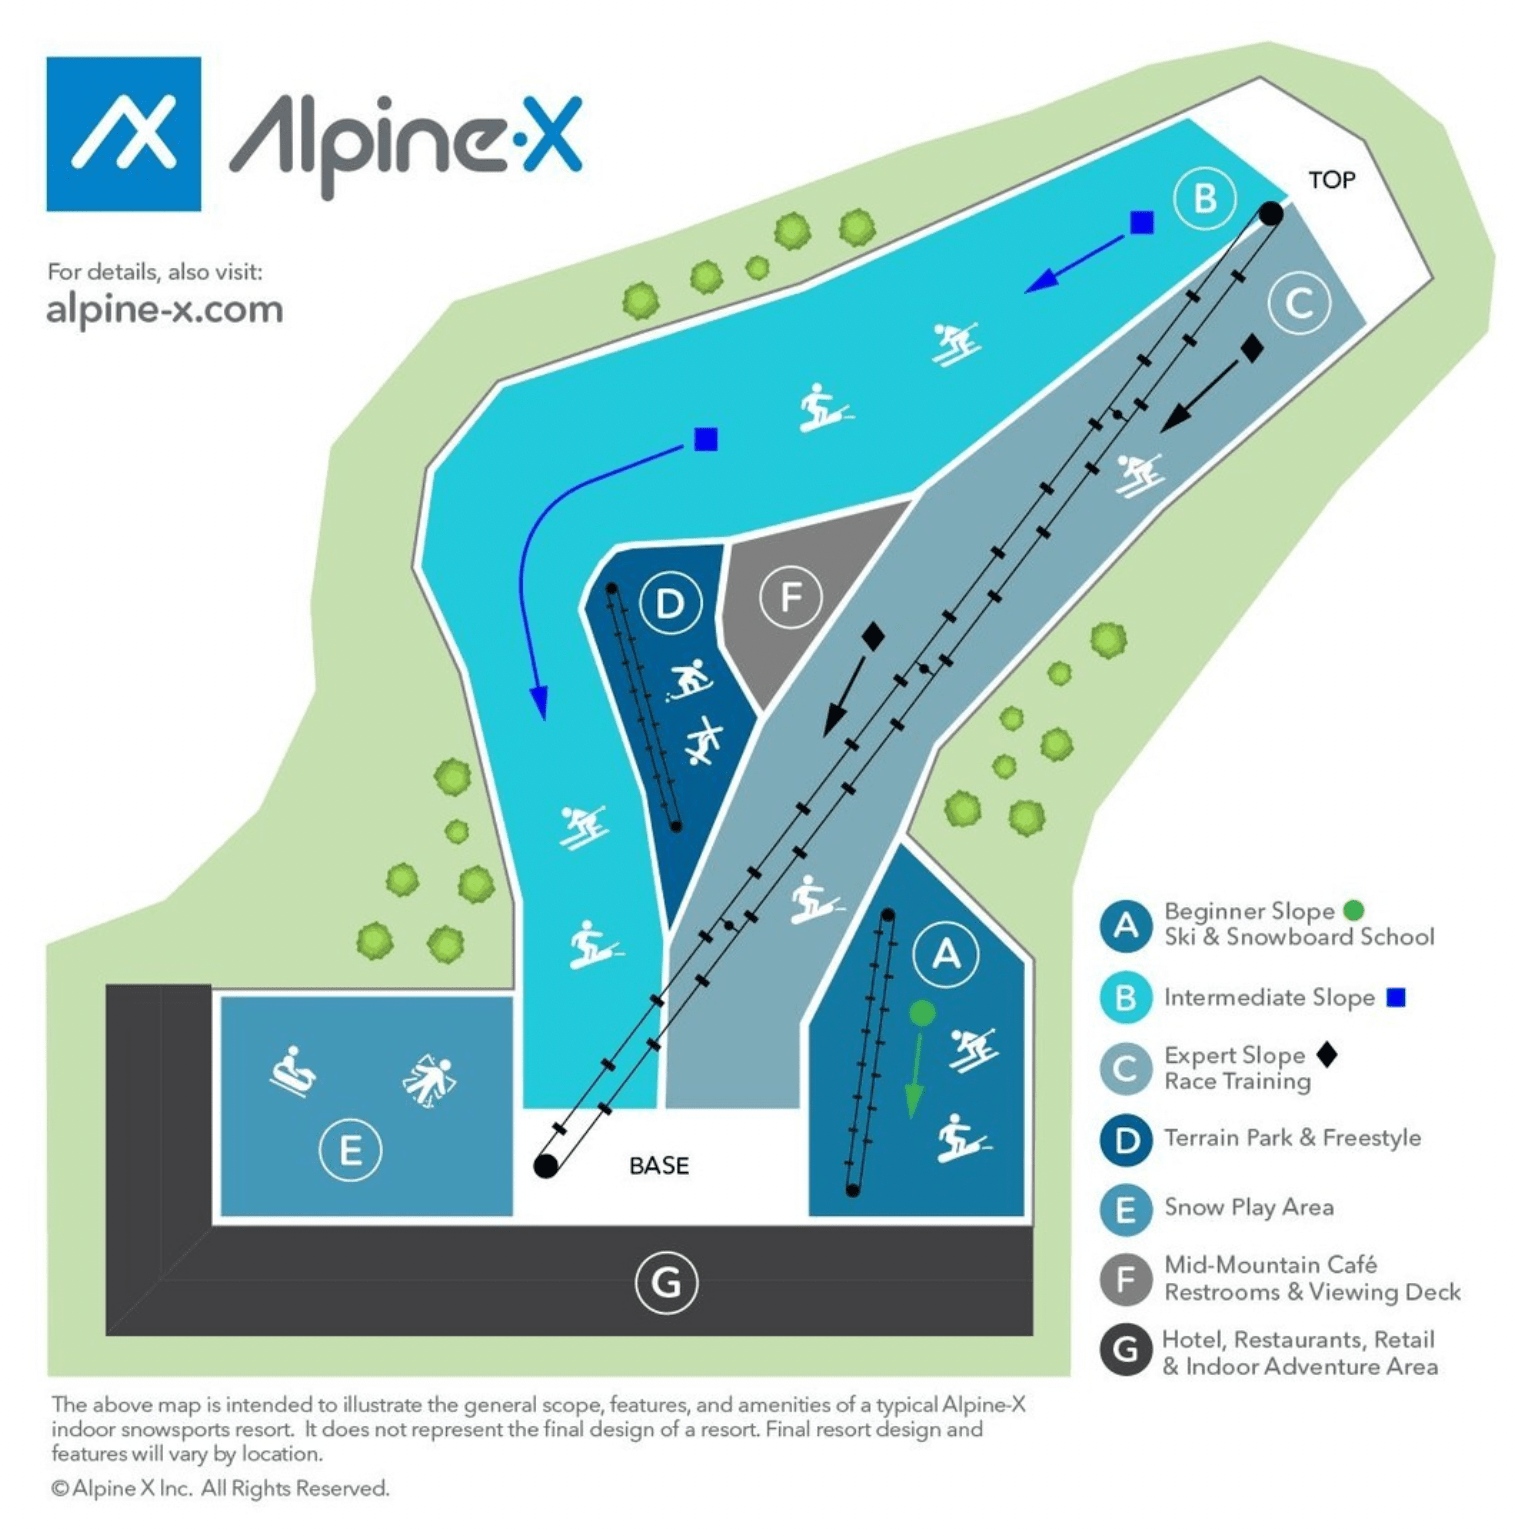 Alpine-X Ski Resort